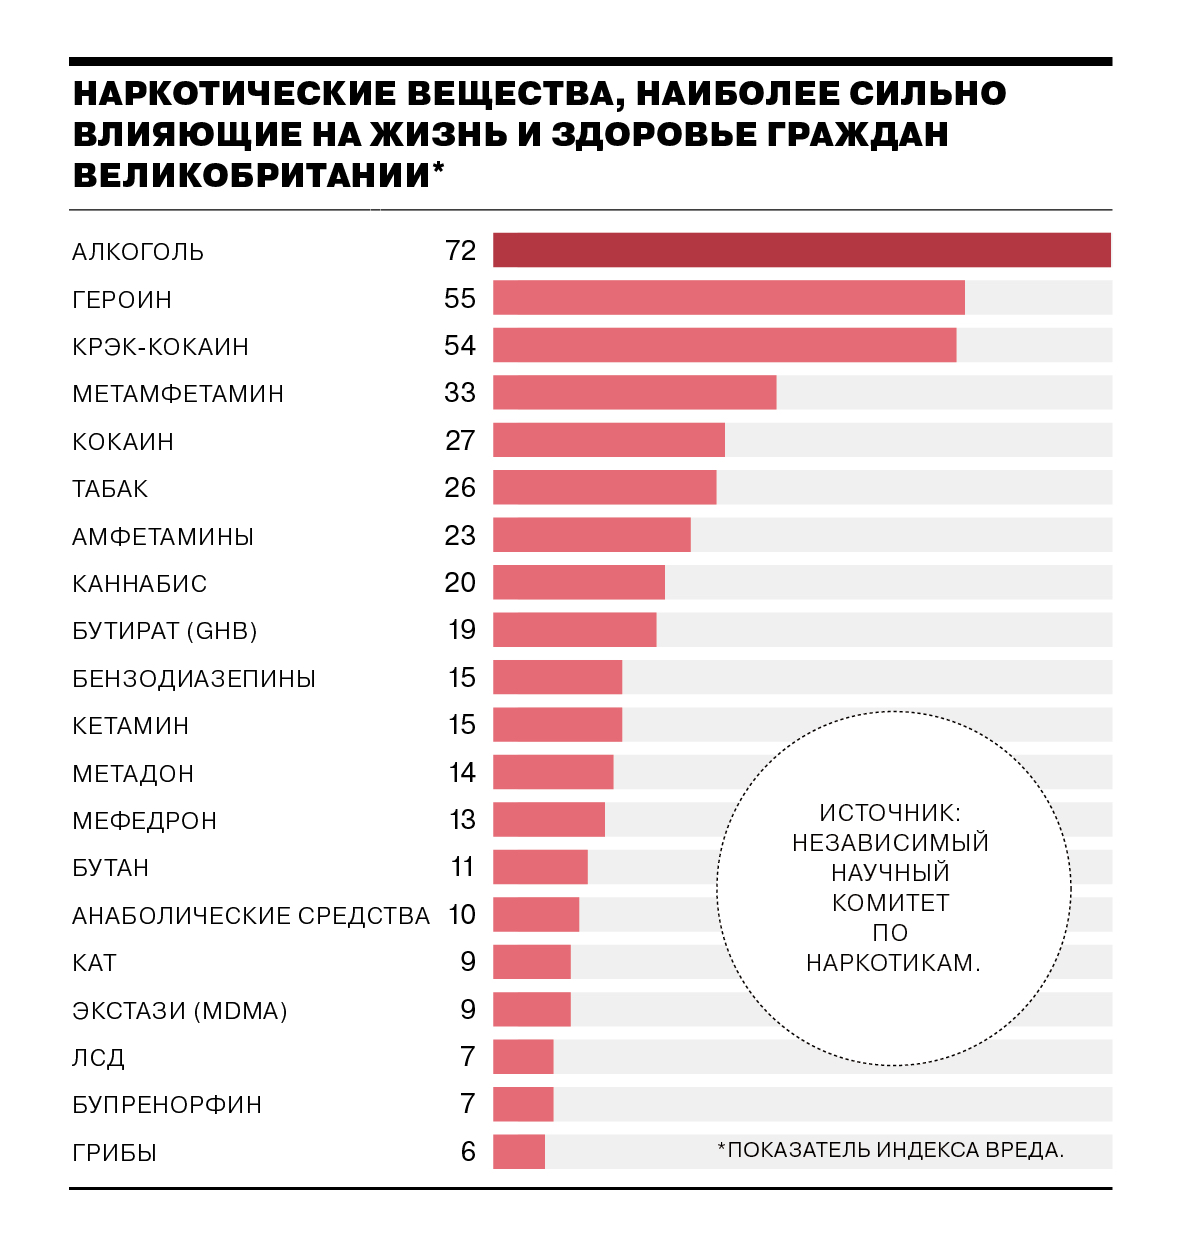 Какой самый распространенный наркотик в россии какой самый распространенный наркотик в россии